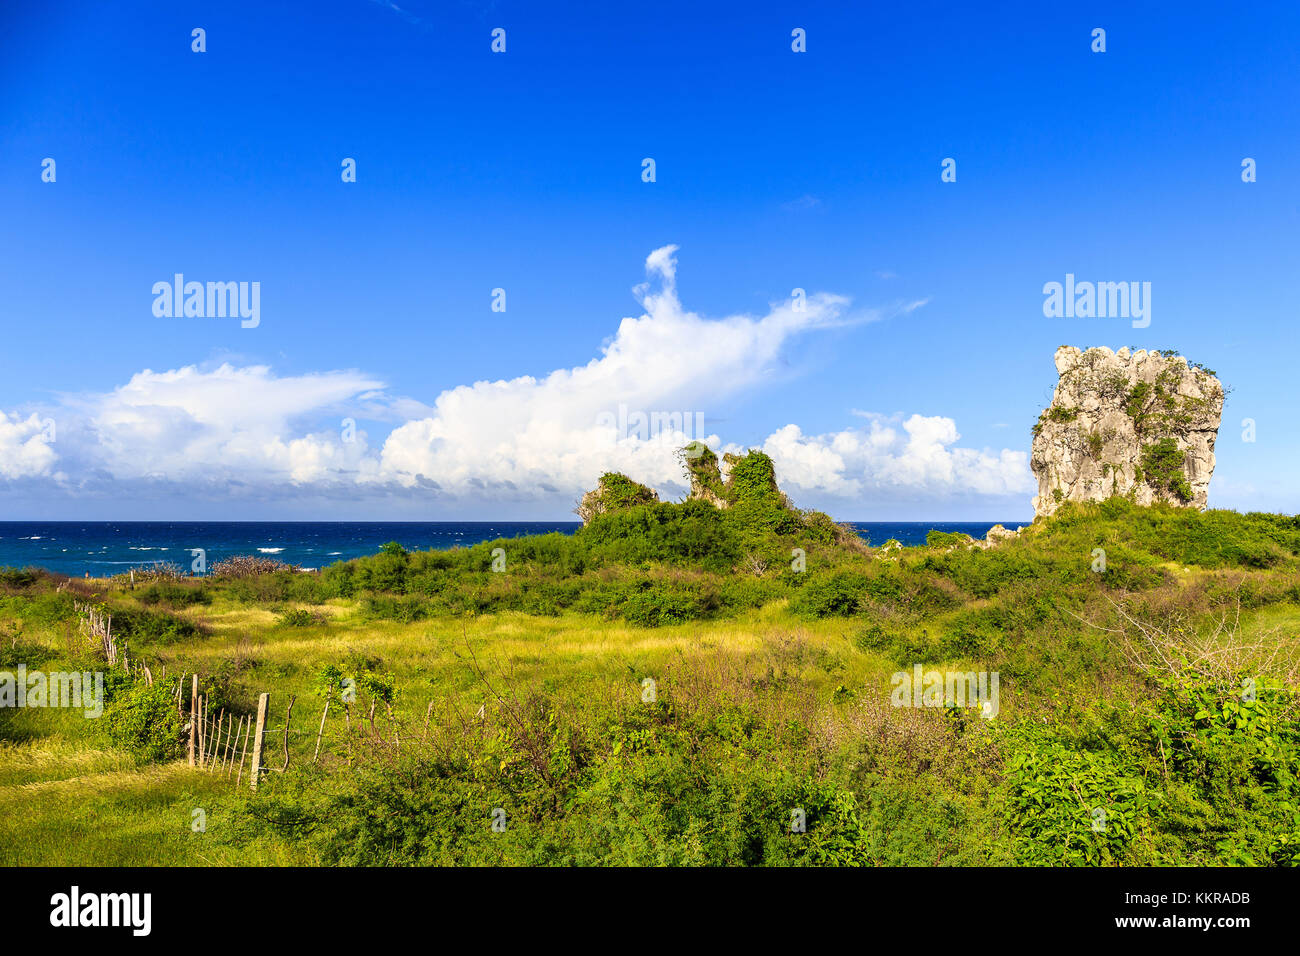 La costa di Playa Jibacoa sul sito del nord di Cuba Foto Stock